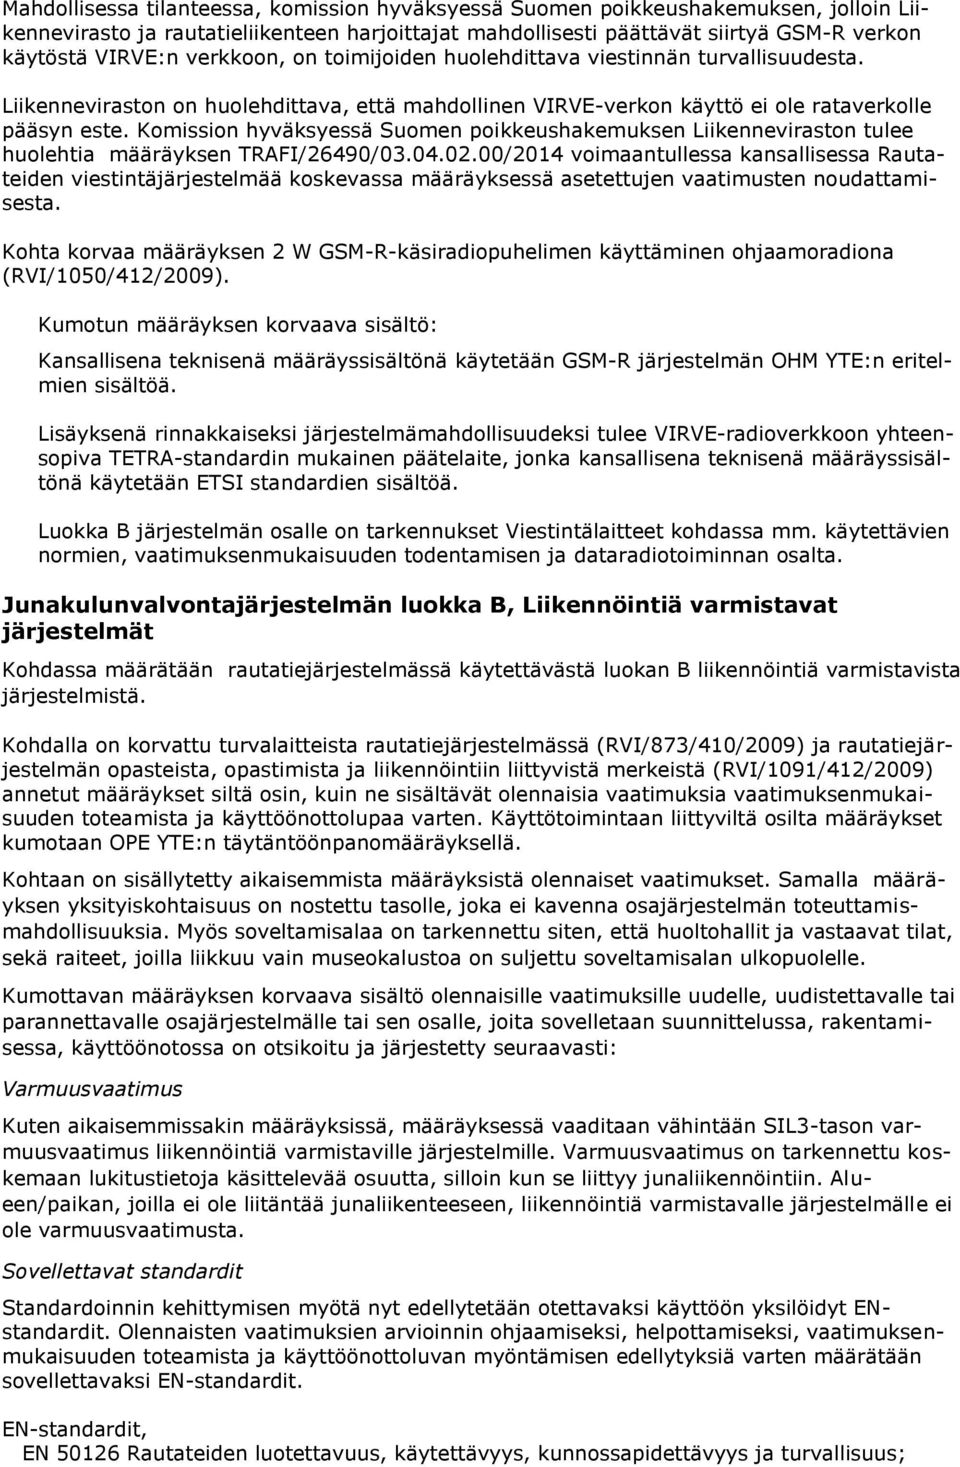 Komission hyväksyessä Suomen poikkeushakemuksen Liikenneviraston tulee huolehtia määräyksen TRAFI/26490/03.04.02.